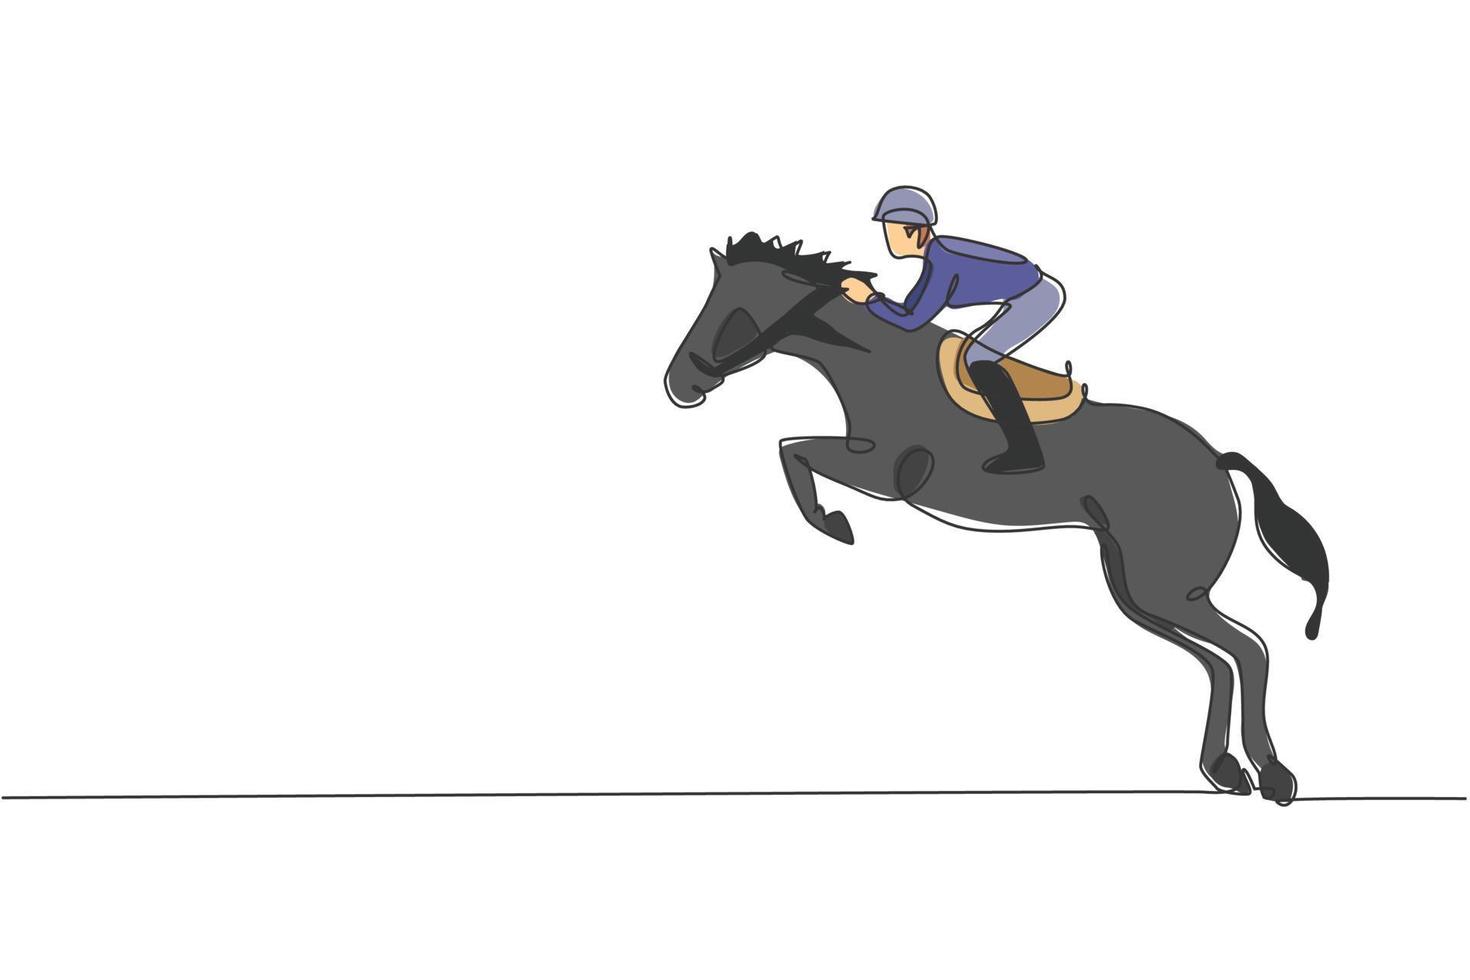 en enda linjeteckning av ung hästryttare man utför dressyrhoppningstest vektorgrafisk illustration. ridsport show konkurrens koncept. modern kontinuerlig linjeritningsdesign vektor